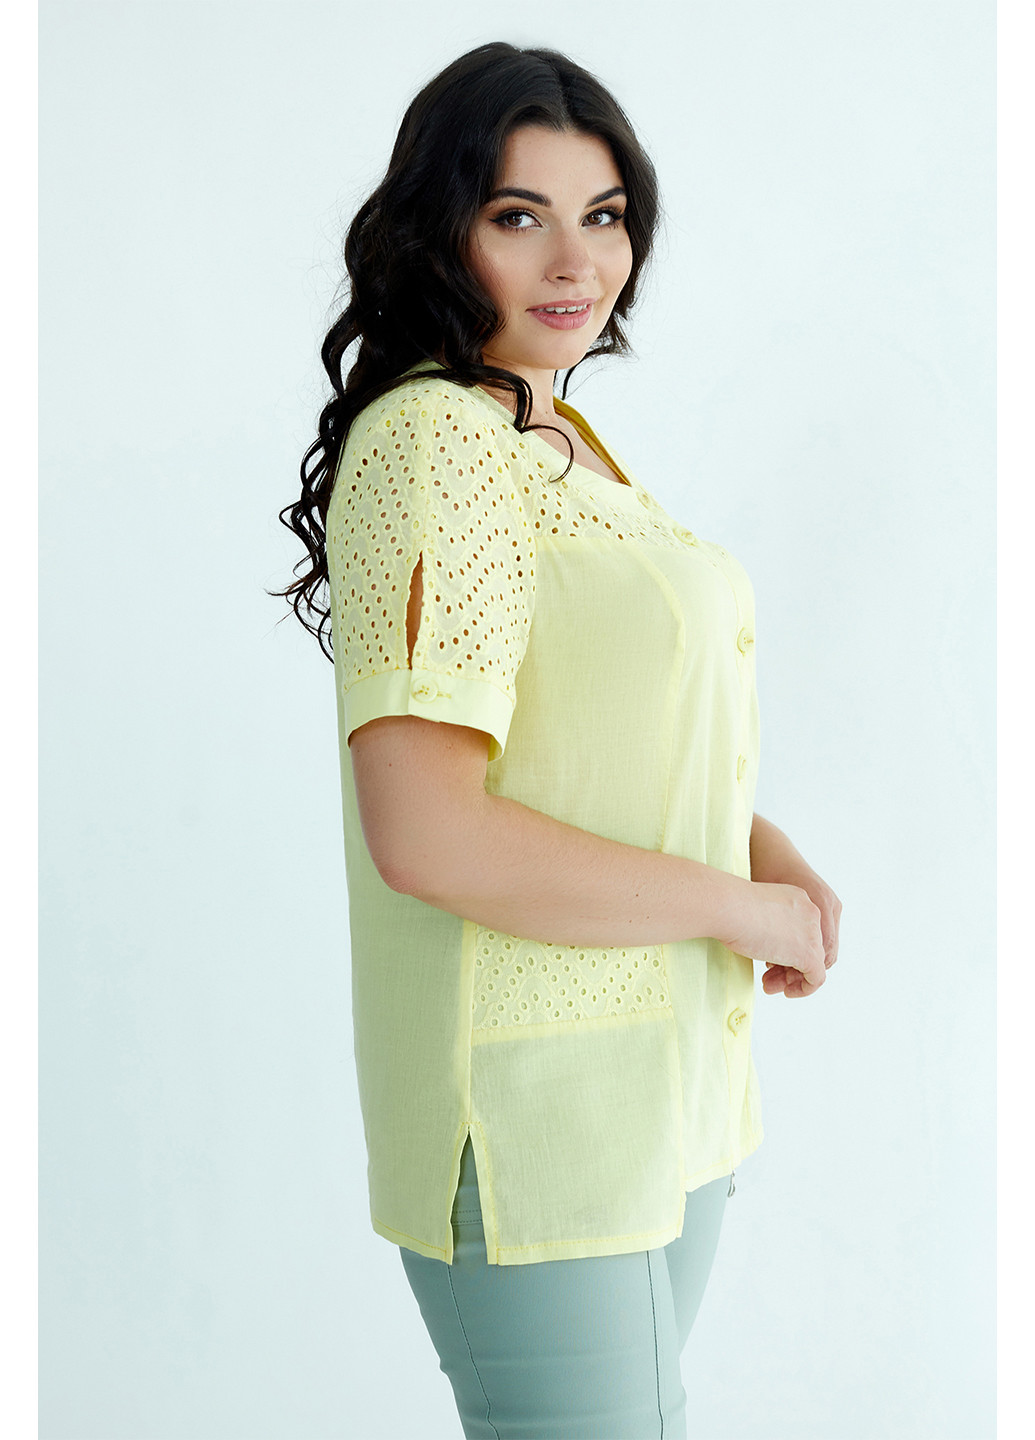 Светло-желтая летняя блуза A'll Posa